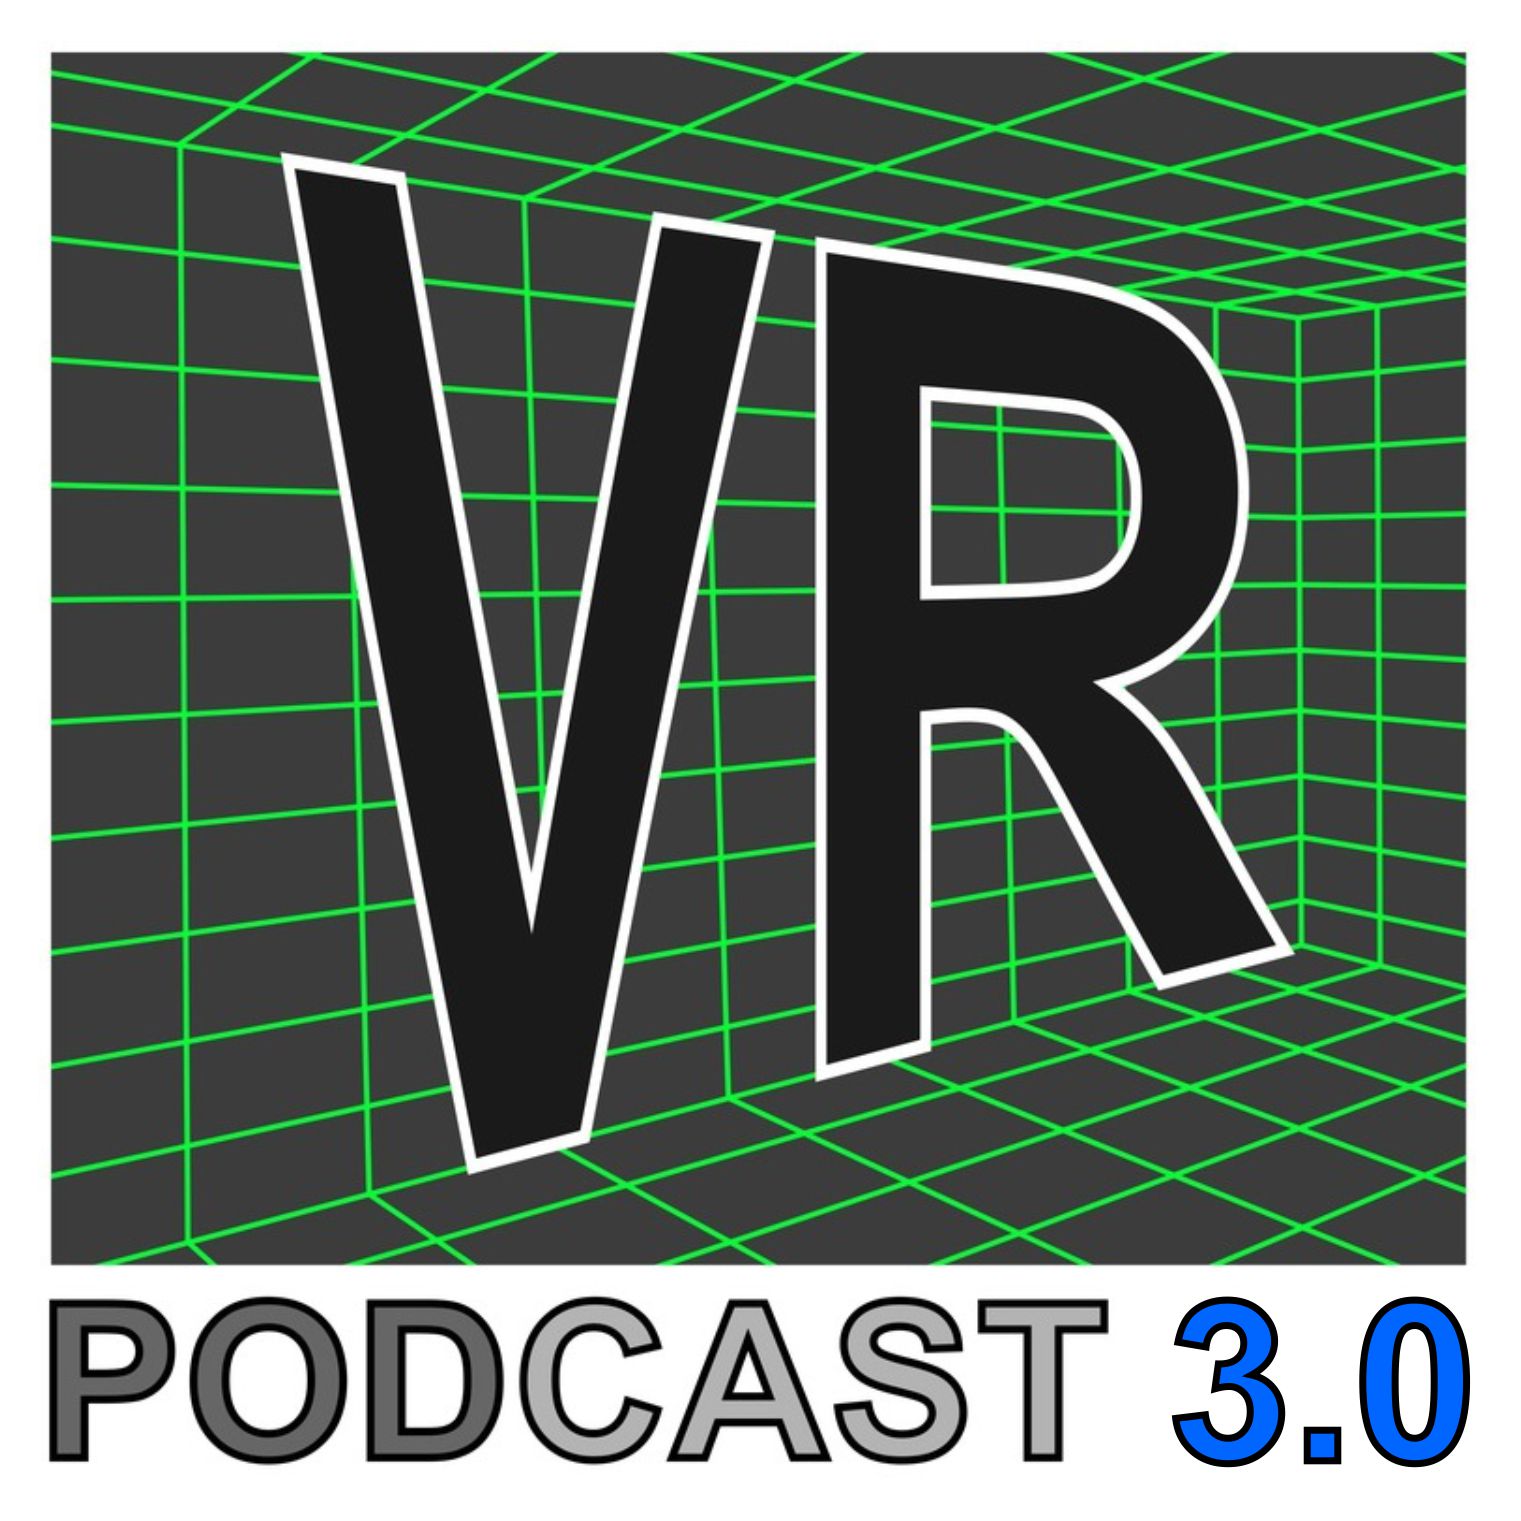 E206 - VR VR VR VR ...